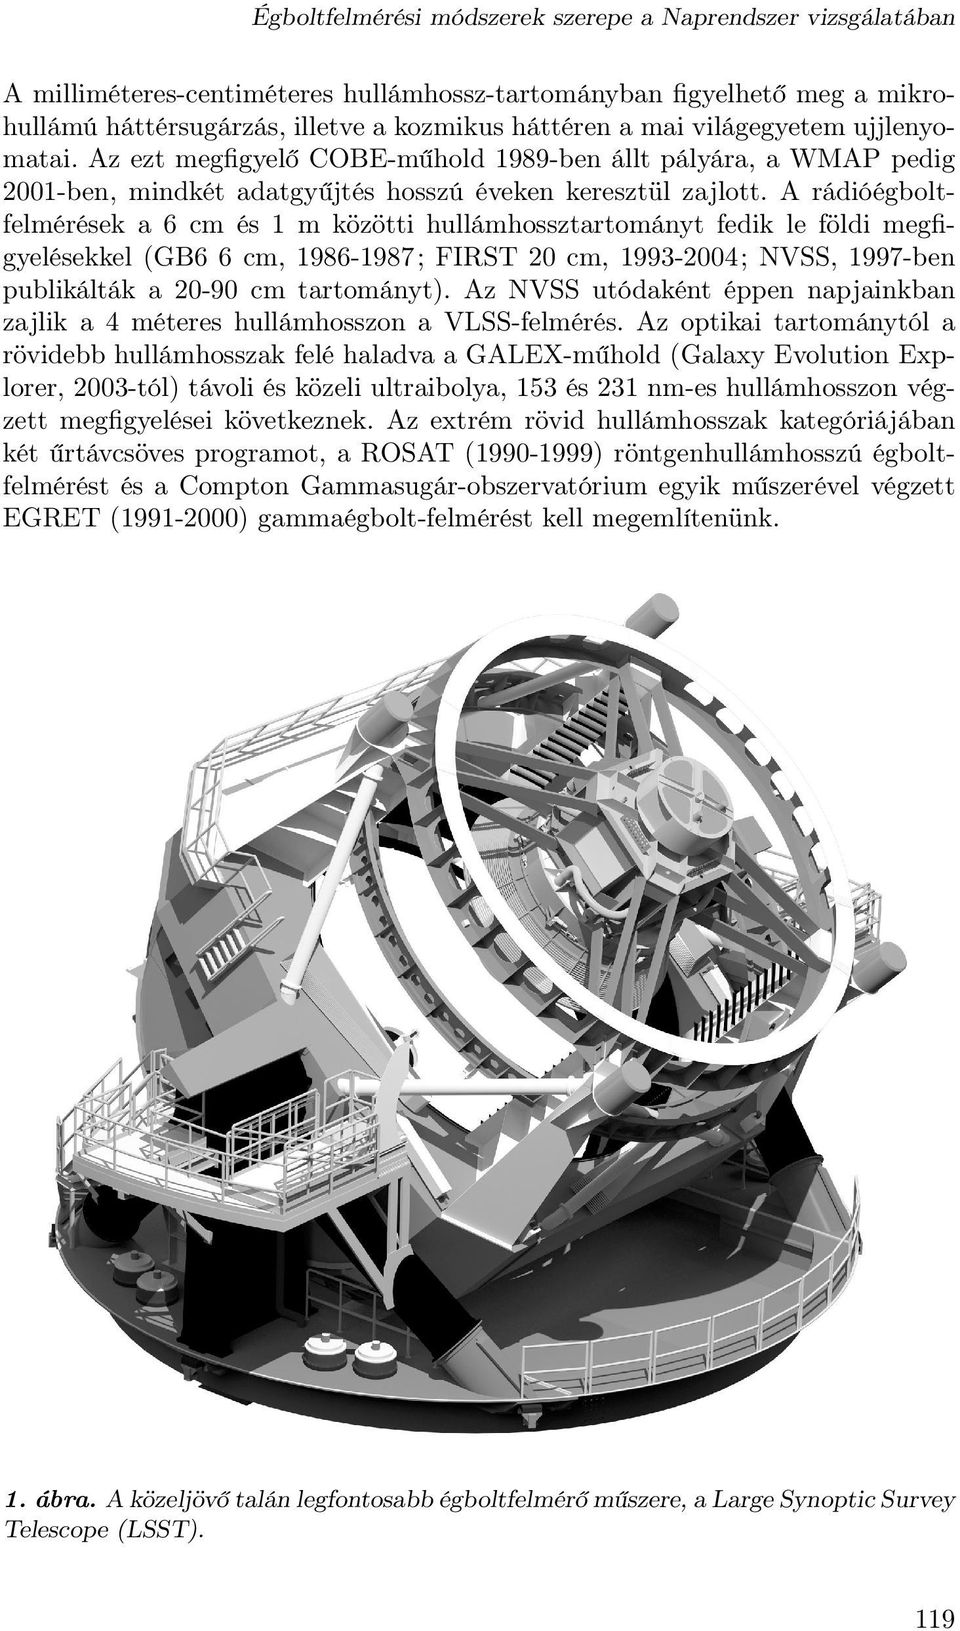 A rádióégboltfelmérések a 6 cm és 1 m közötti hullámhossztartományt fedik le földi megfigyelésekkel (GB6 6 cm, 1986-1987; FIRST 20 cm, 1993-2004; NVSS, 1997-ben publikálták a 20-90 cm tartományt).